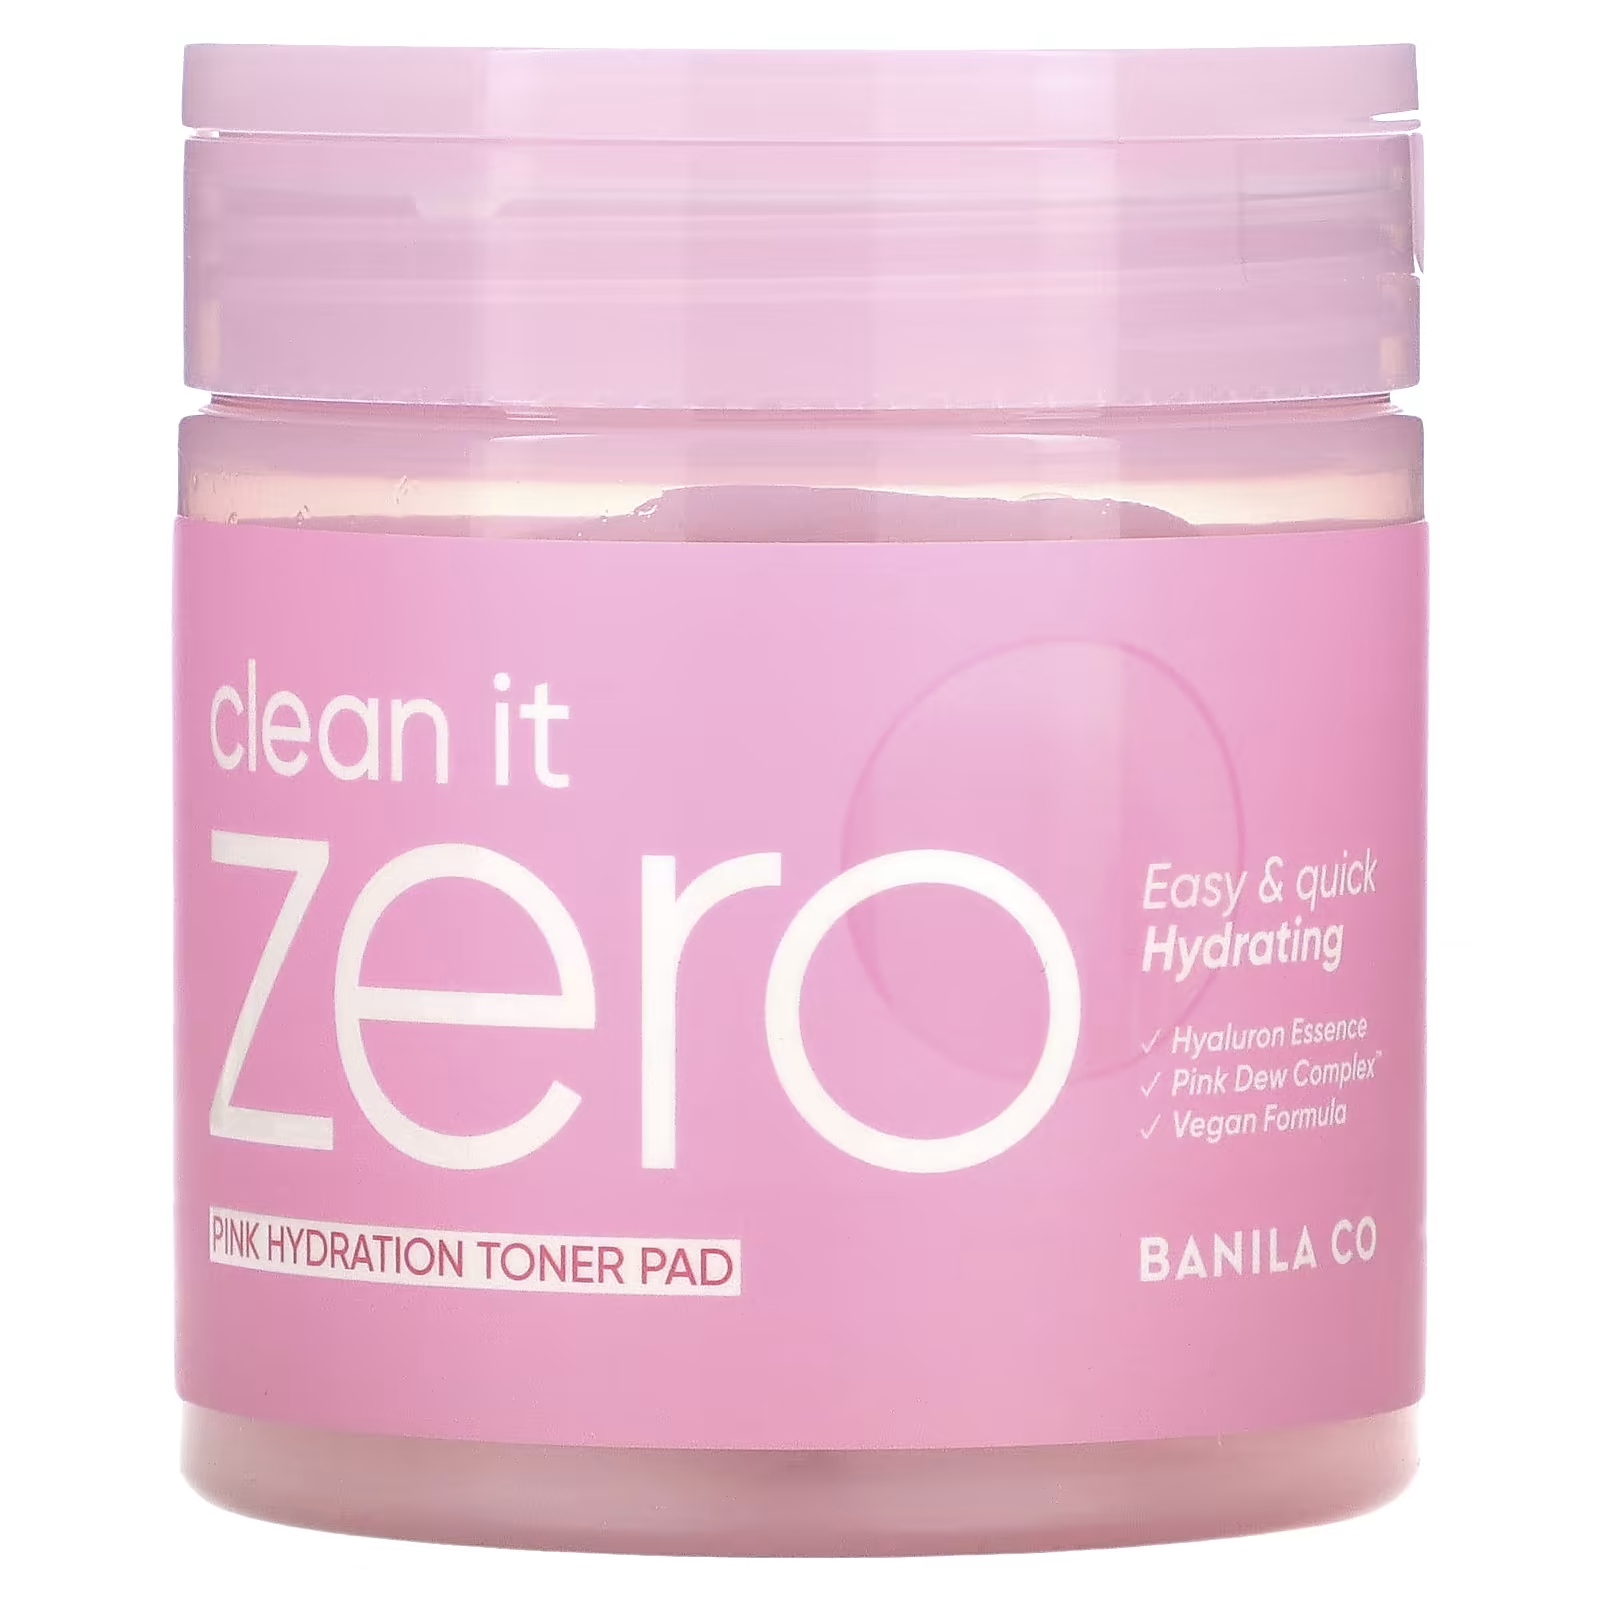 Салфетки увлажняющие Banila Co Clean it Zero Pink Hydration Toner Pad, 70 подушечек